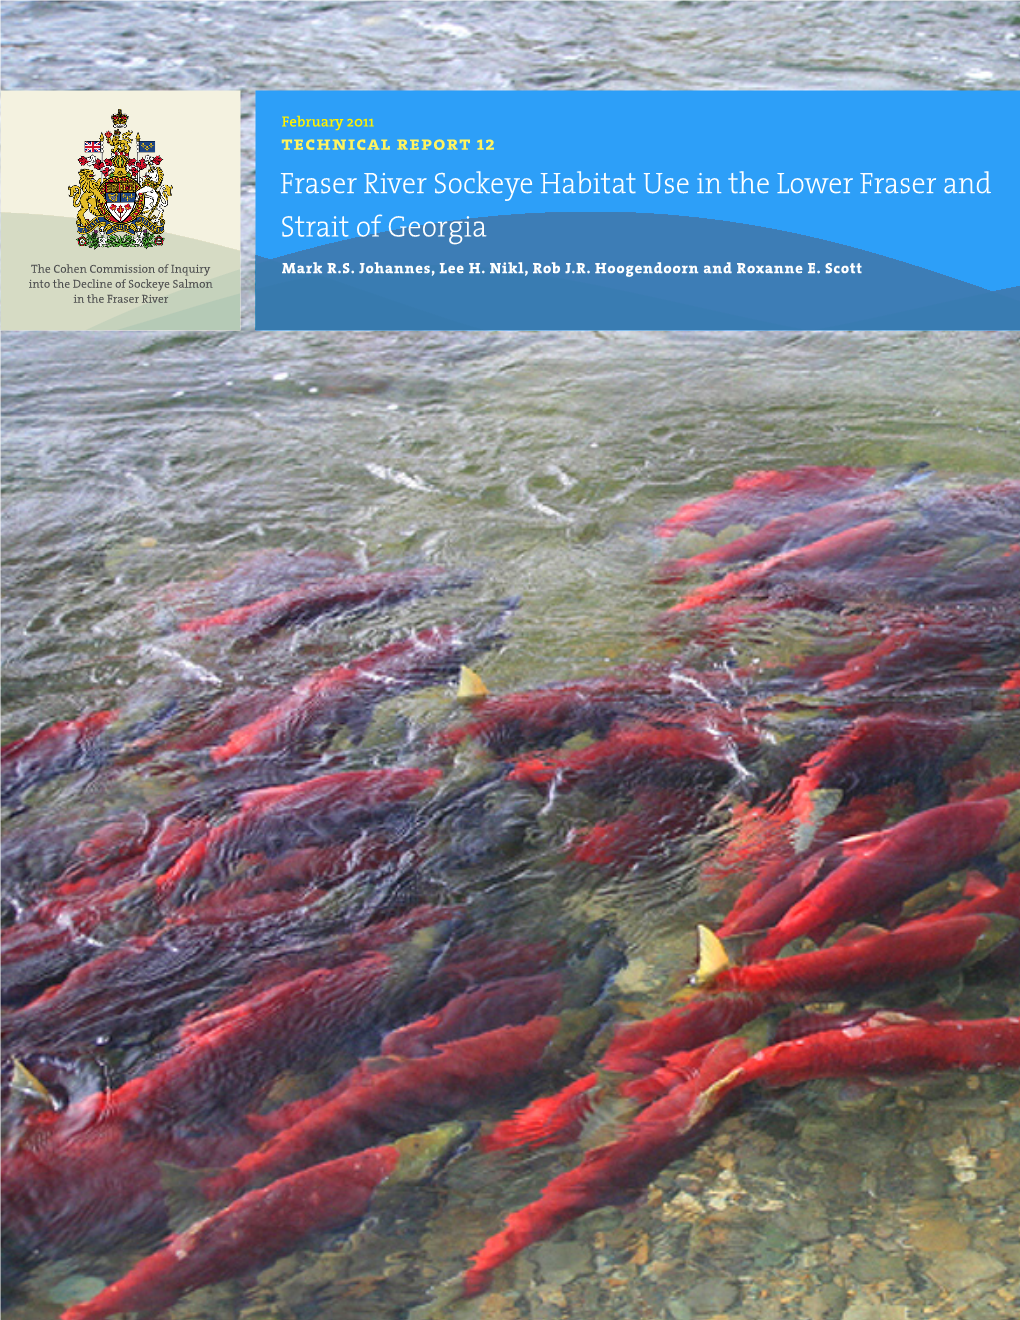 Fraser River Sockeye Habitat Use in the Lower Fraser and Strait of Georgia